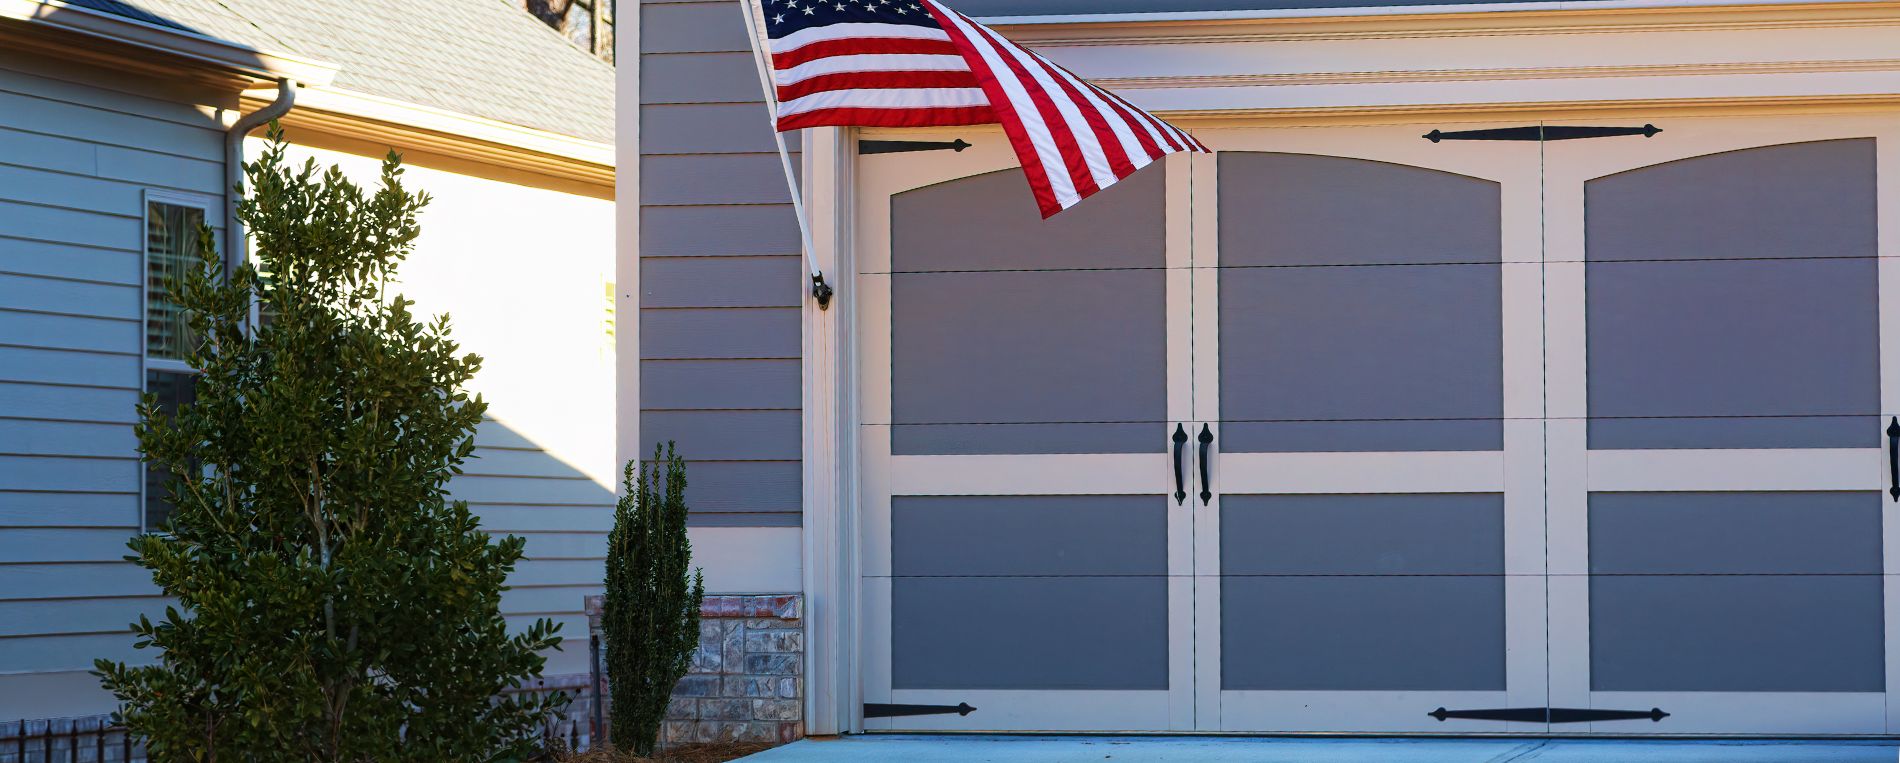 Garage door close up with USA flag